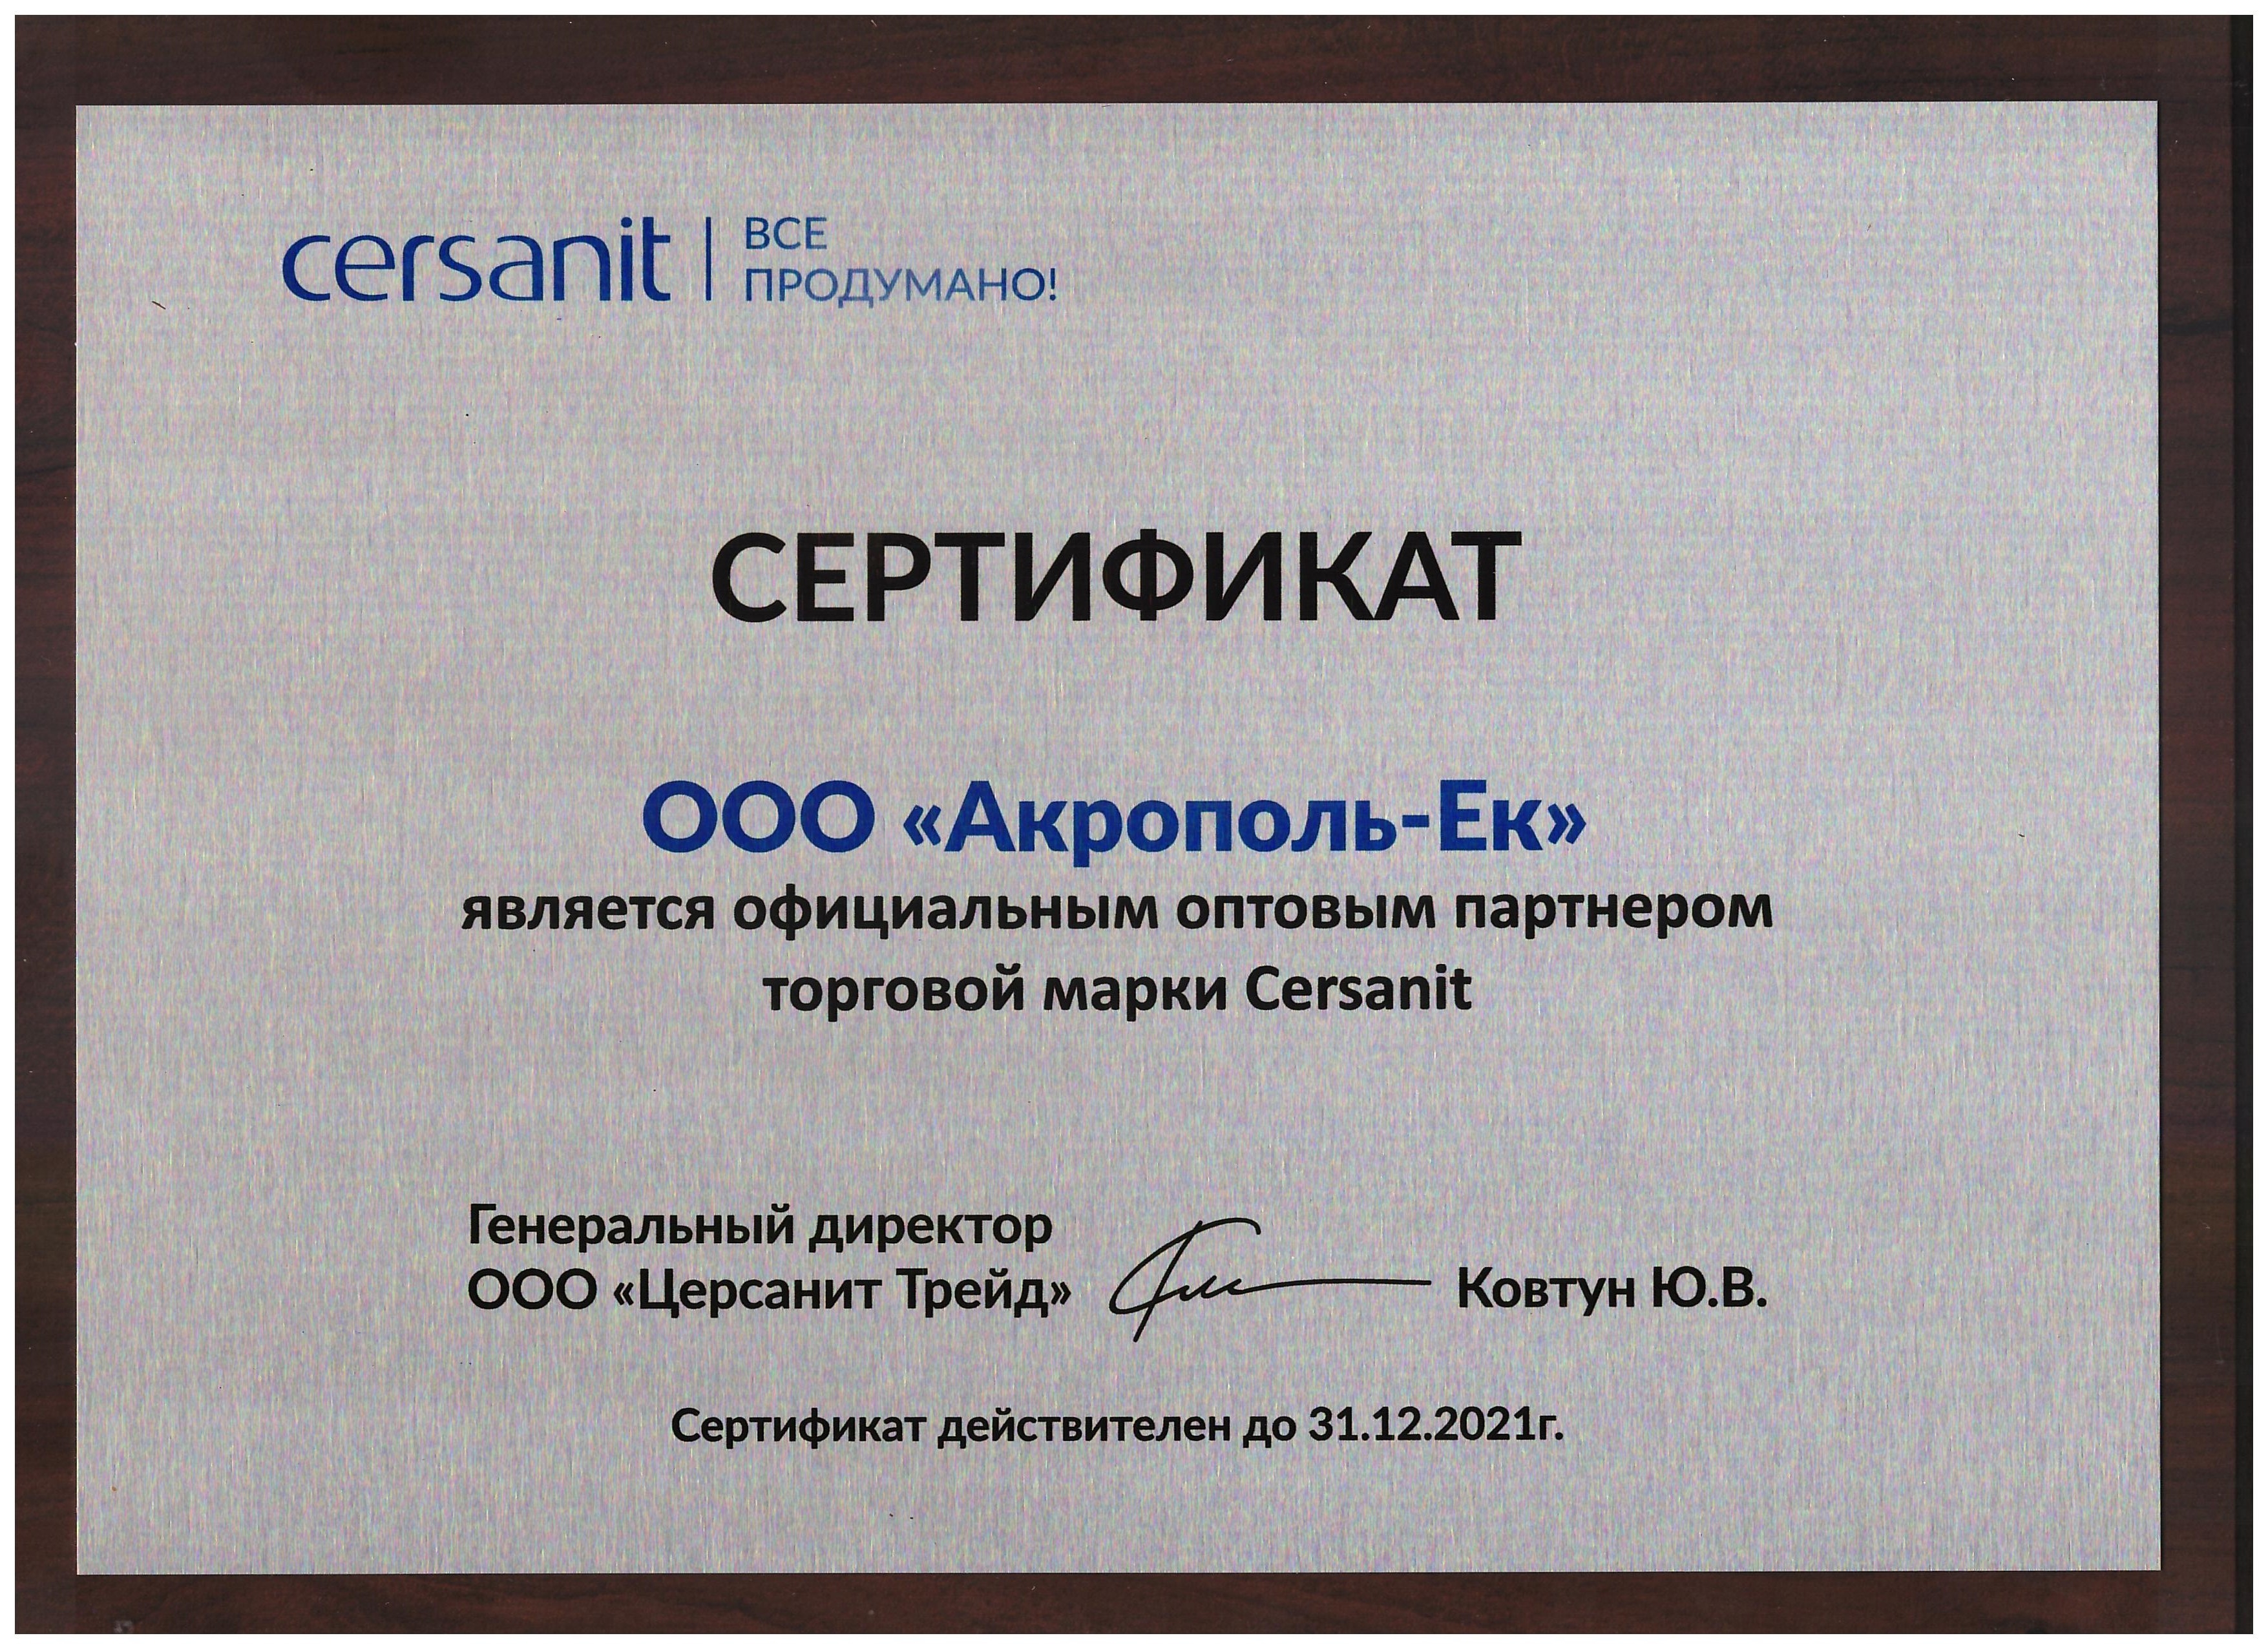 Сертификат Акрополь